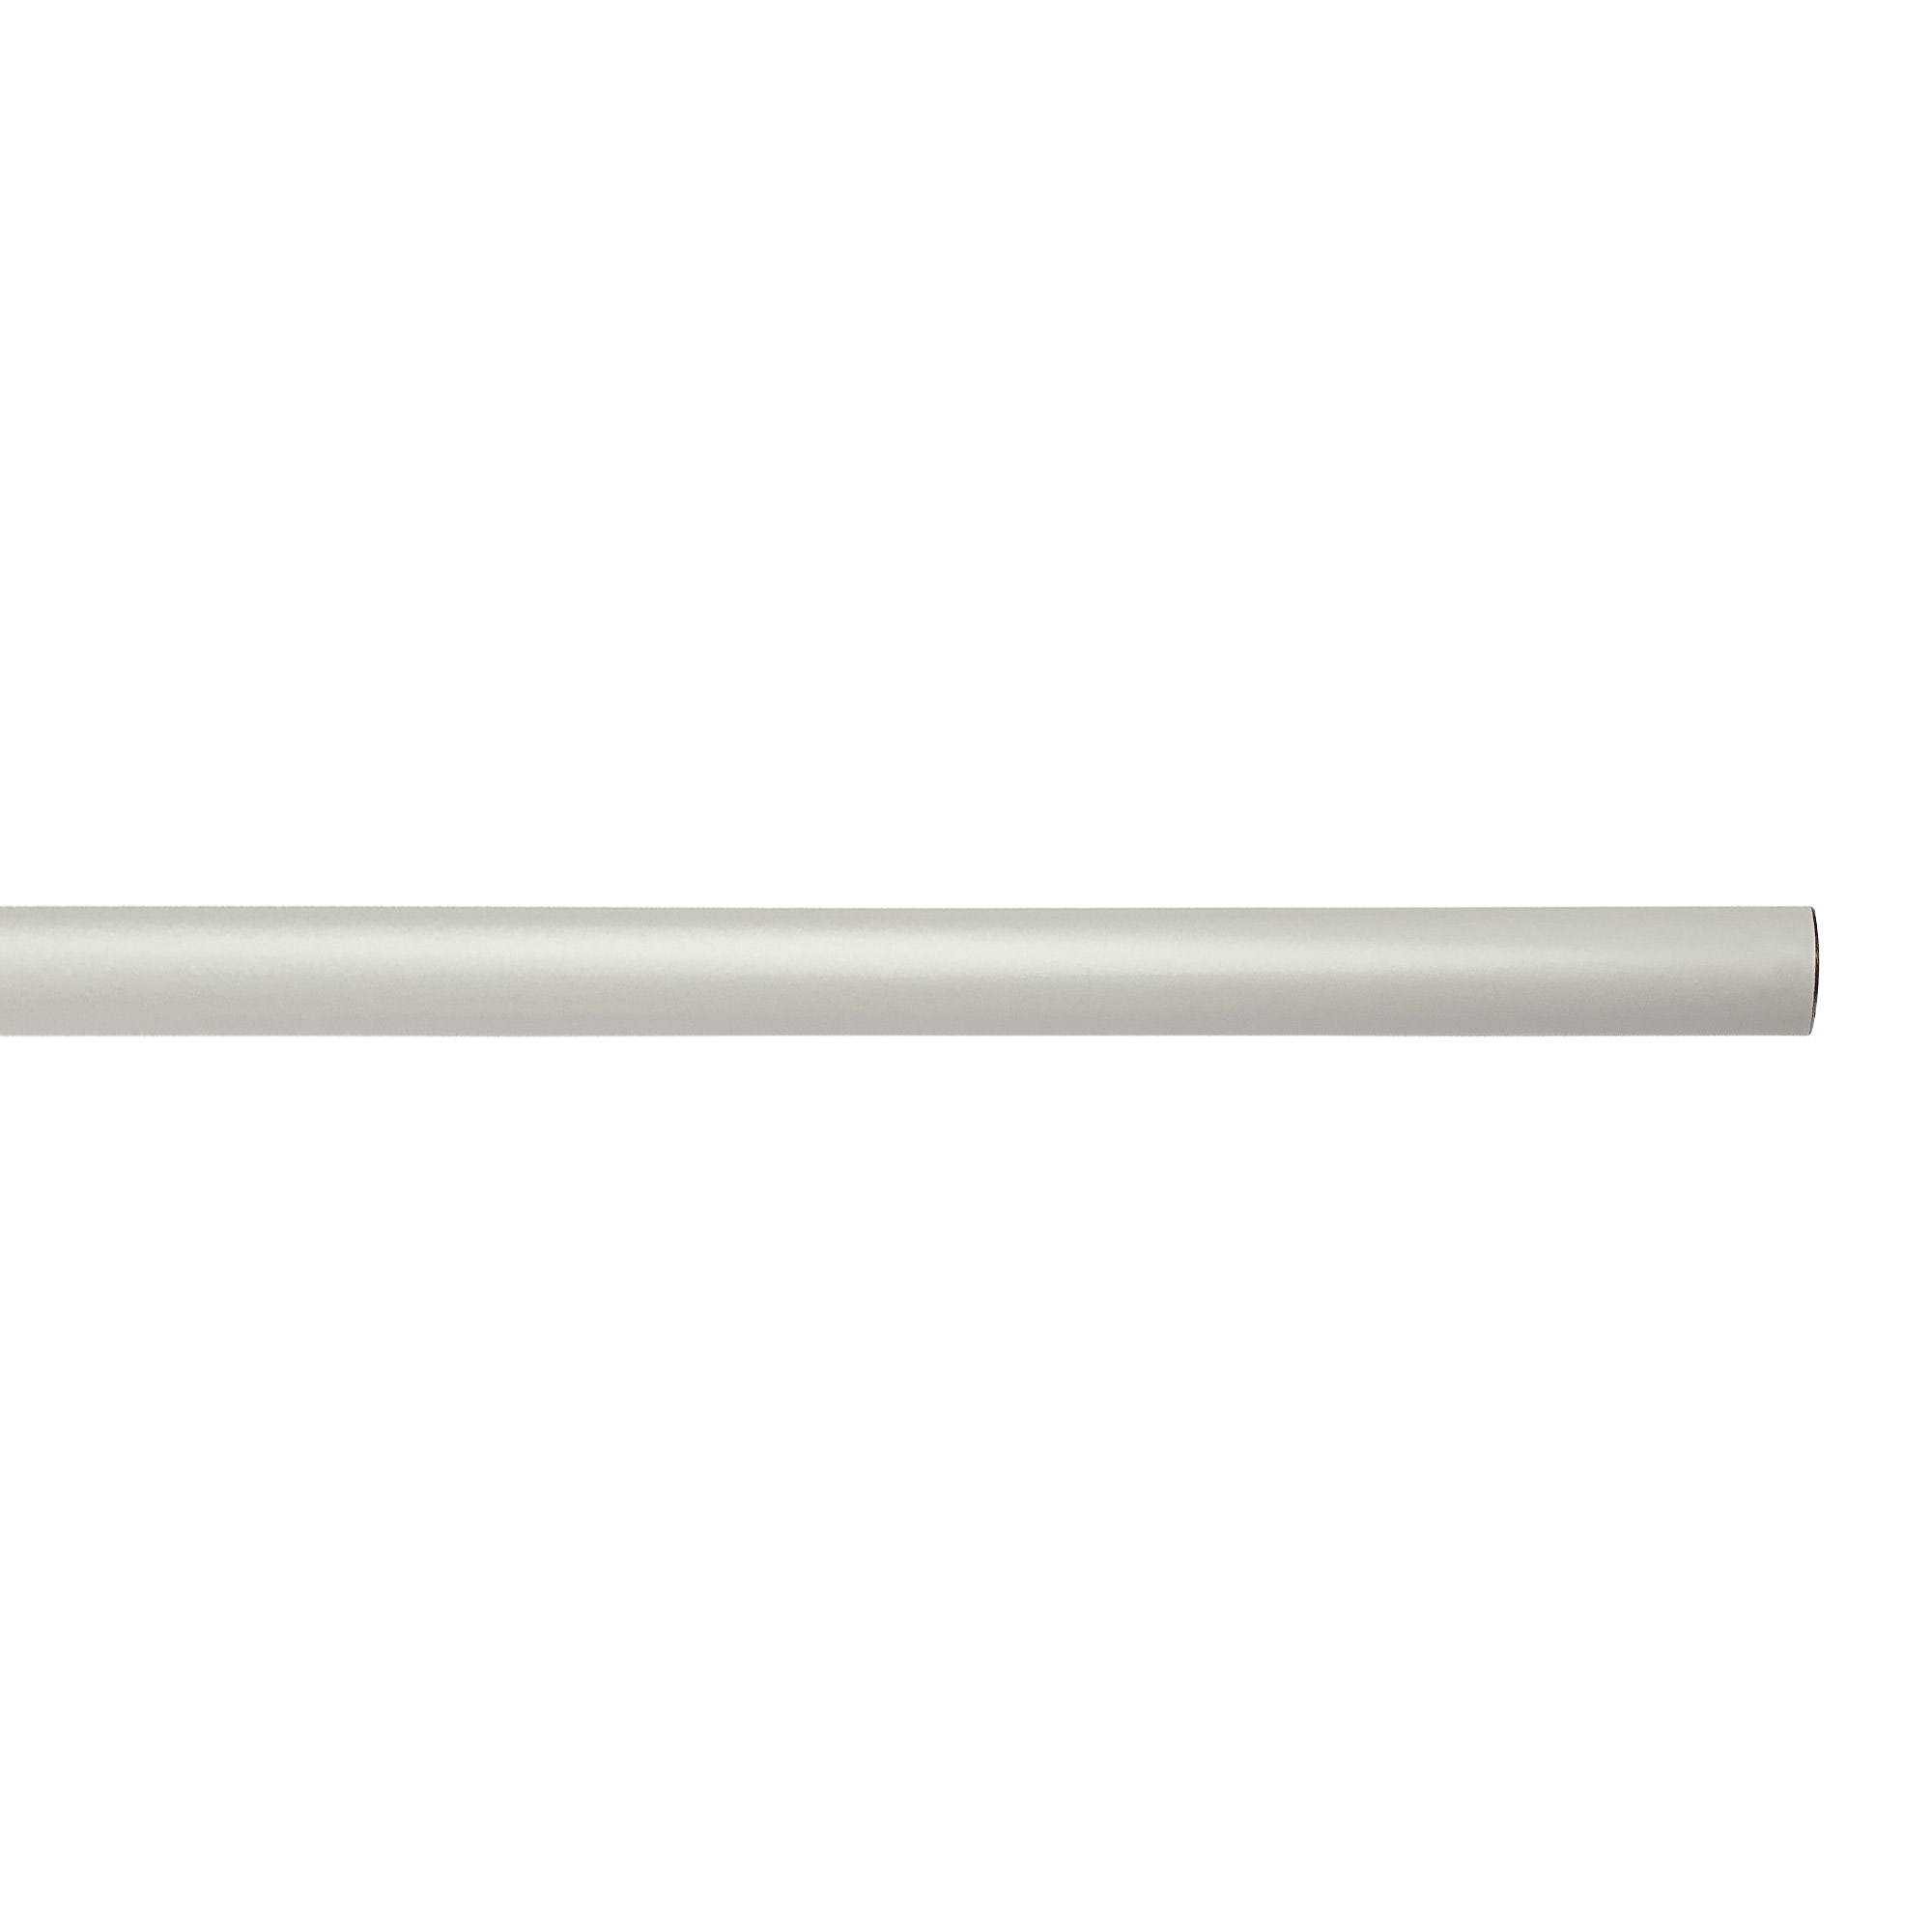 アイアンハンガーパイプ コの字型-天井吊タイプ H500 ホワイト PS-HB008-56-G141 水平パイプは3サイズから選択可能です